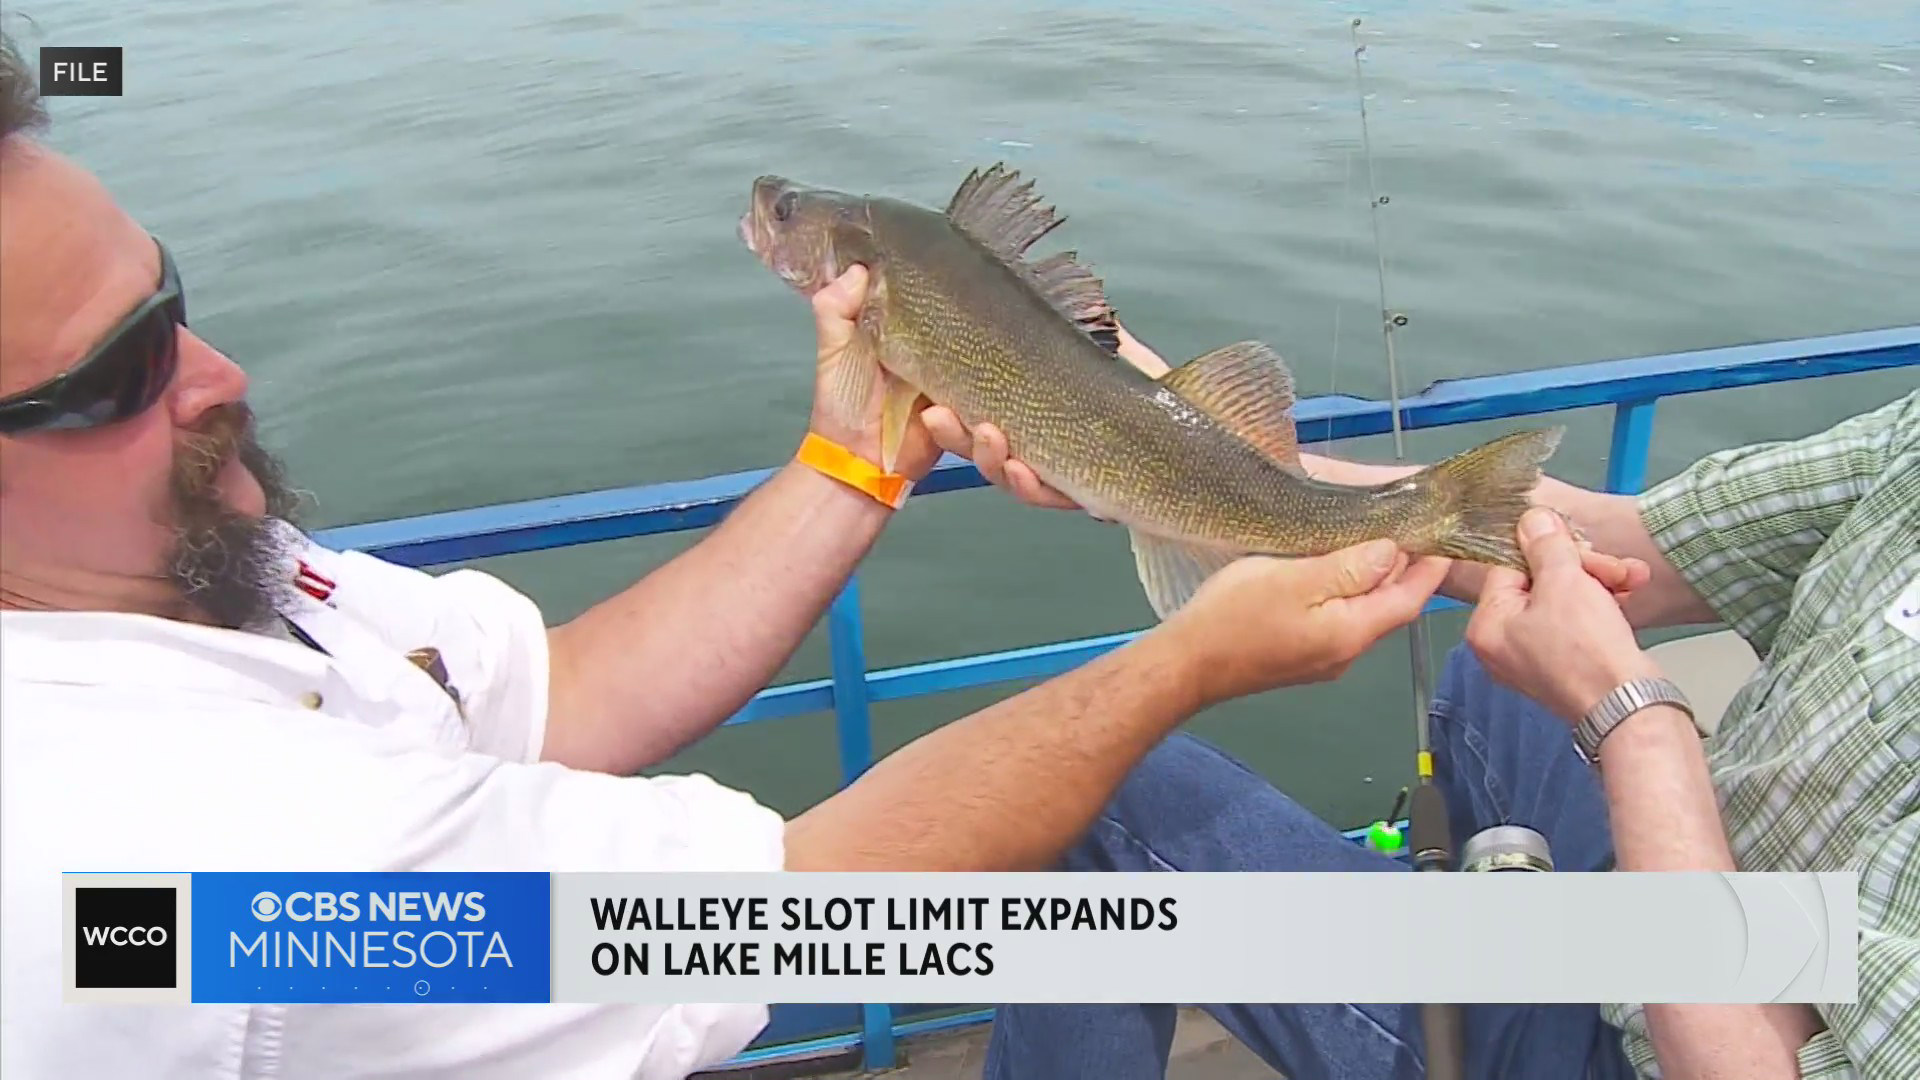 DNR to expand Lake Mille Lacs’ walleye slot limit